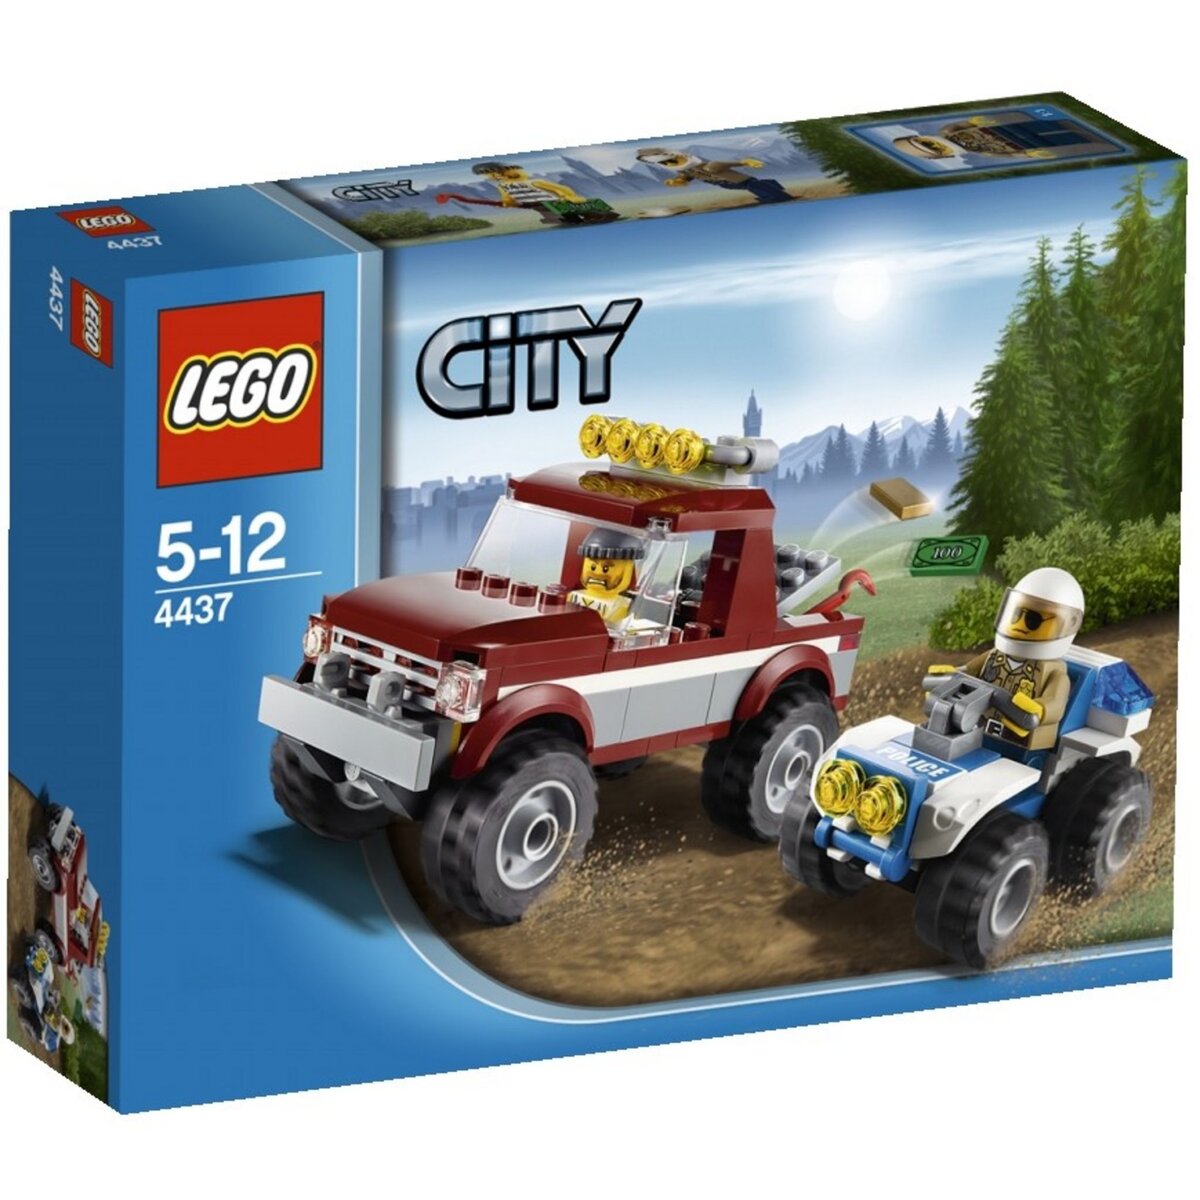 LEGO City 4437